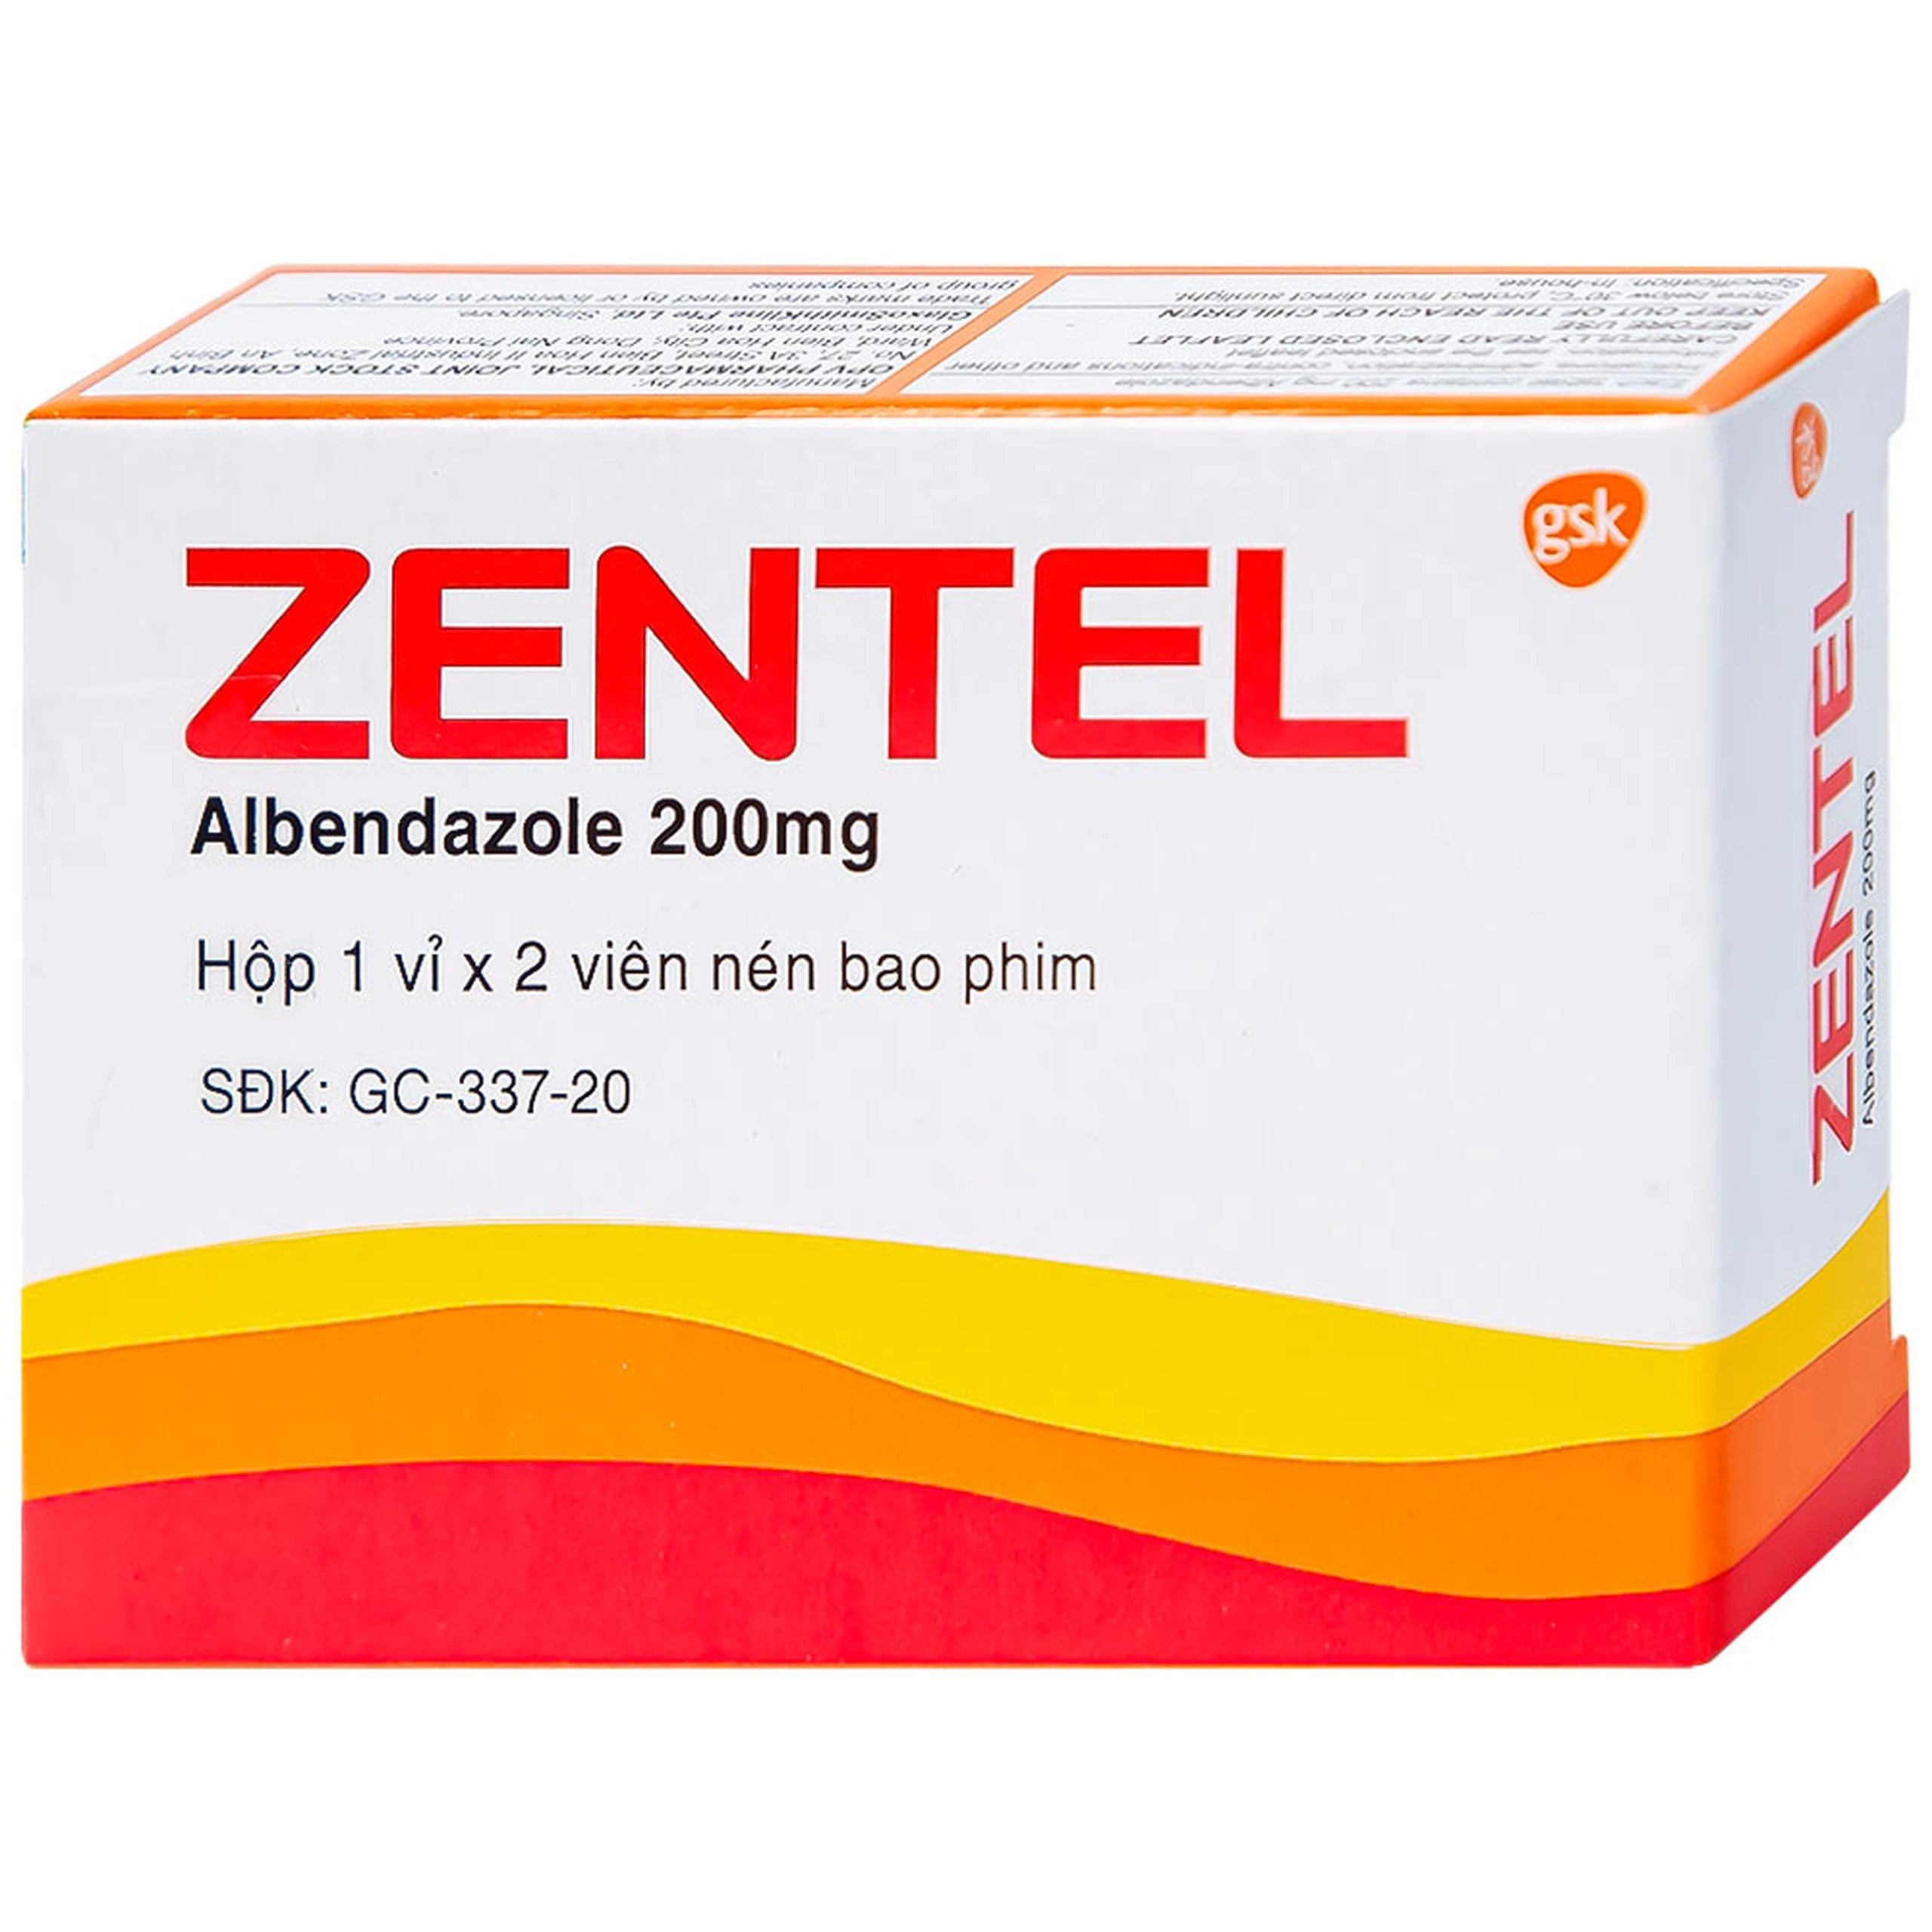 Thuốc Zentel Albendazole 200mg GSK điều trị các loại giun đường ruột nhạy cảm (1 vỉ x 2 viên)